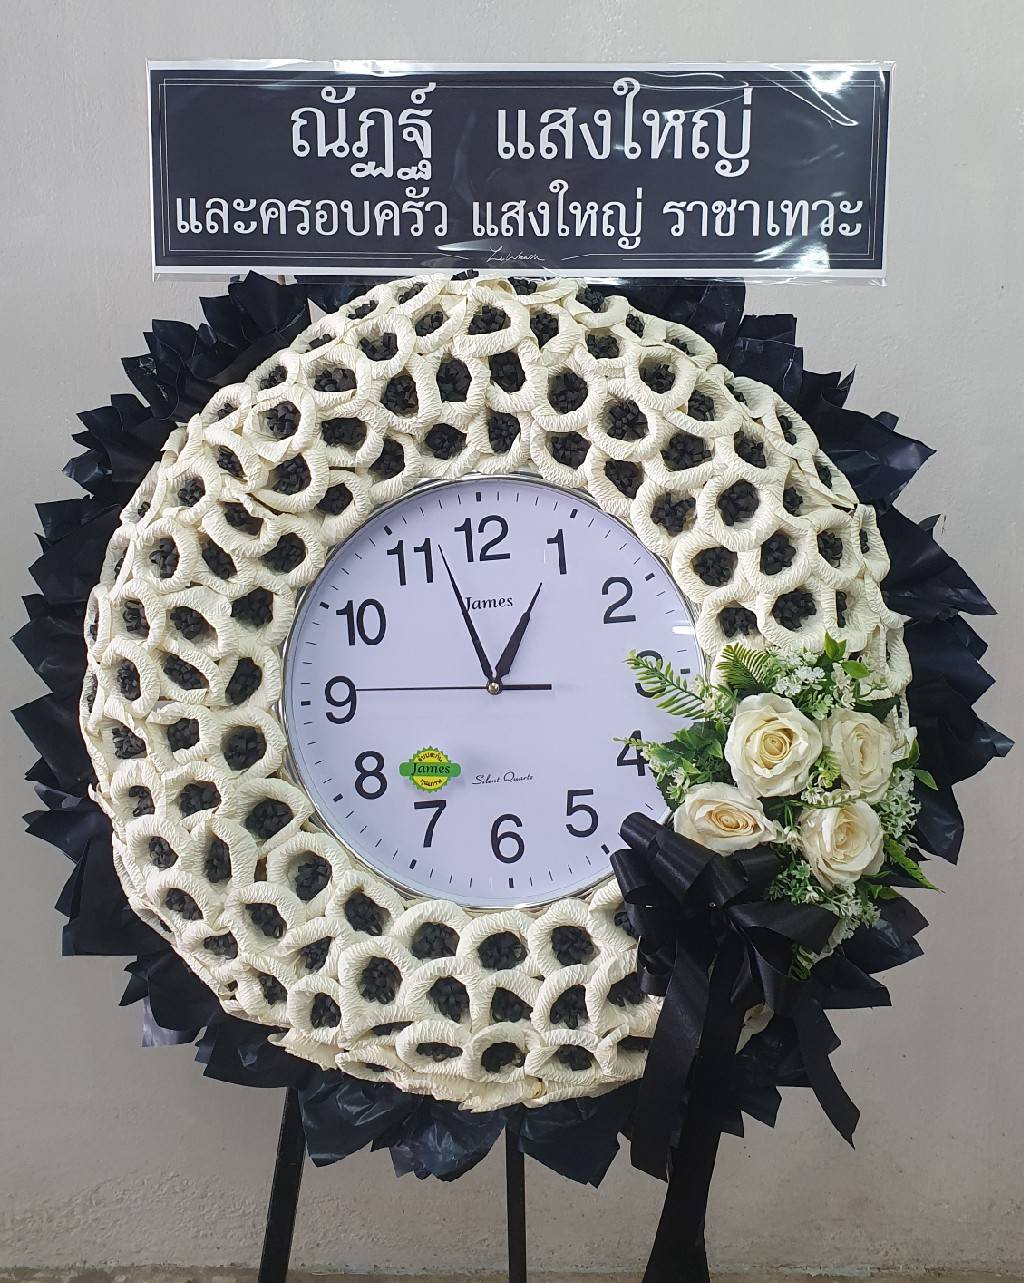 พวงหรีดดอกไม้จันทน์นาฬิกา โทนสีหวานพาสเทล นำนาฬิกาขนาดเส้นผ่านศูนย์กลางประมาณ 60-80 ซม. มาตกแต่งดอกไม้จันทน์สีชมพูอ่อน ตัดกับพื้นหลังสีฟ้า